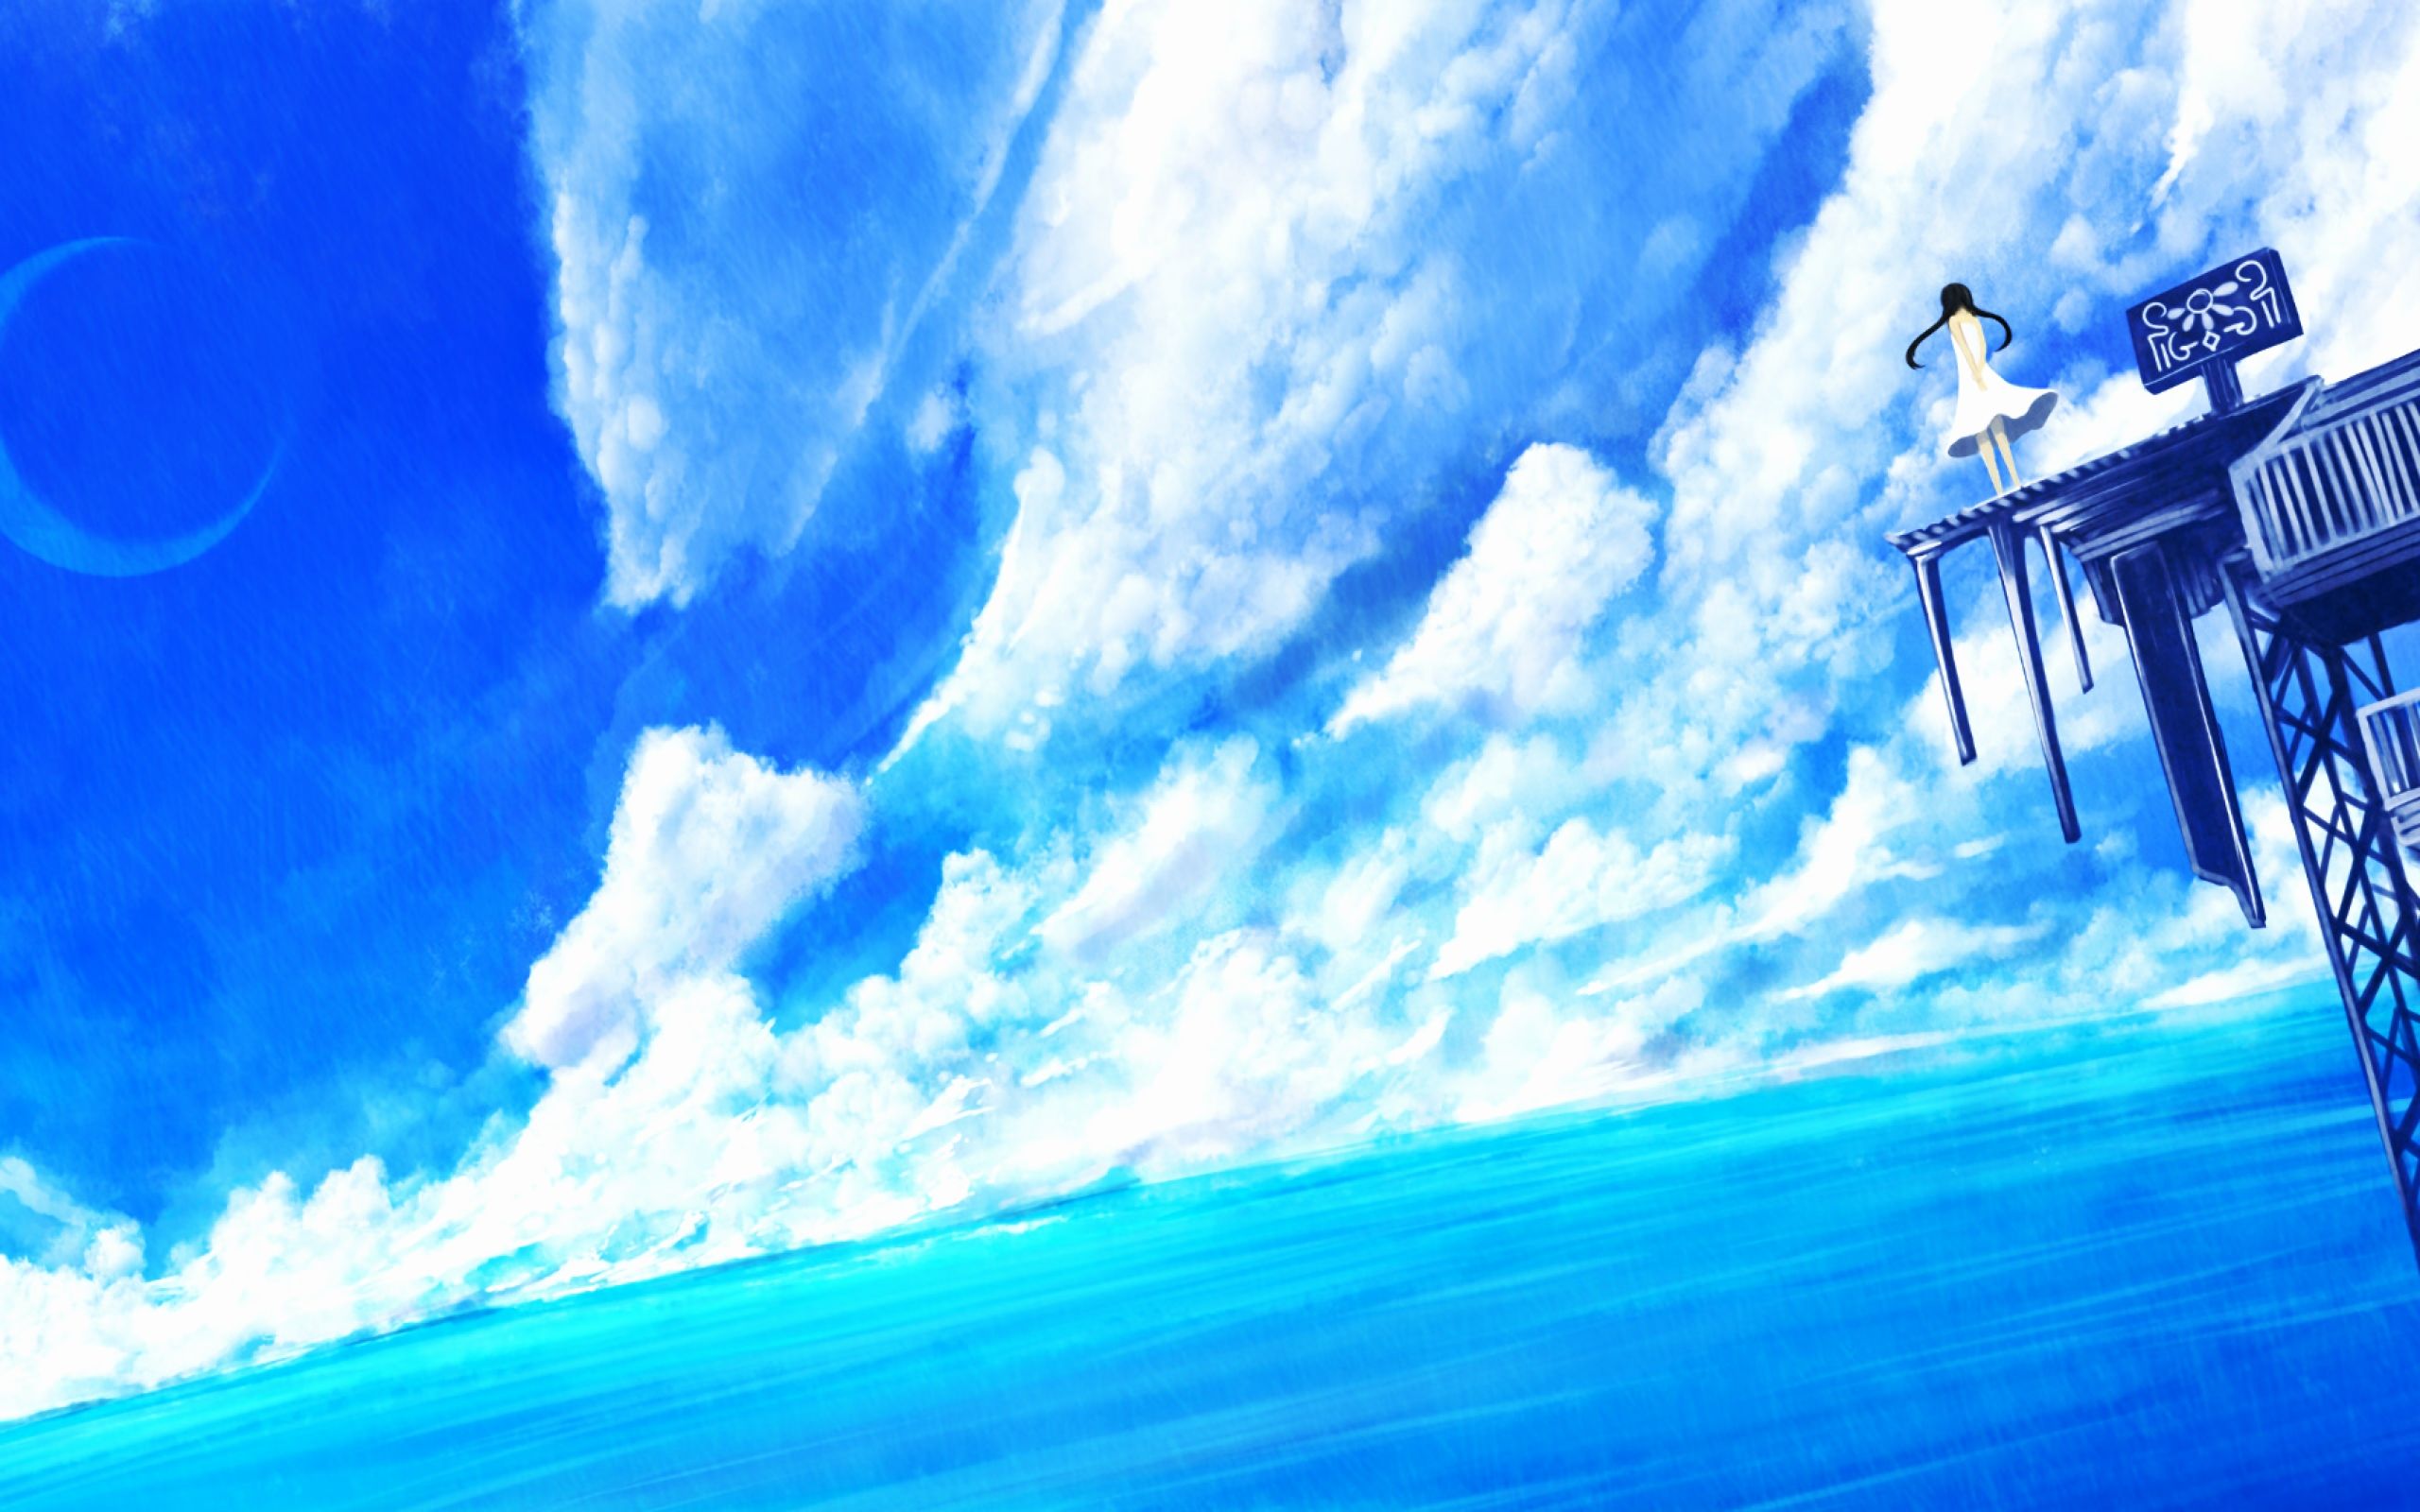 ArtStation - Anime Styled Background | Ocean View | Anime Girl-demhanvico.com.vn